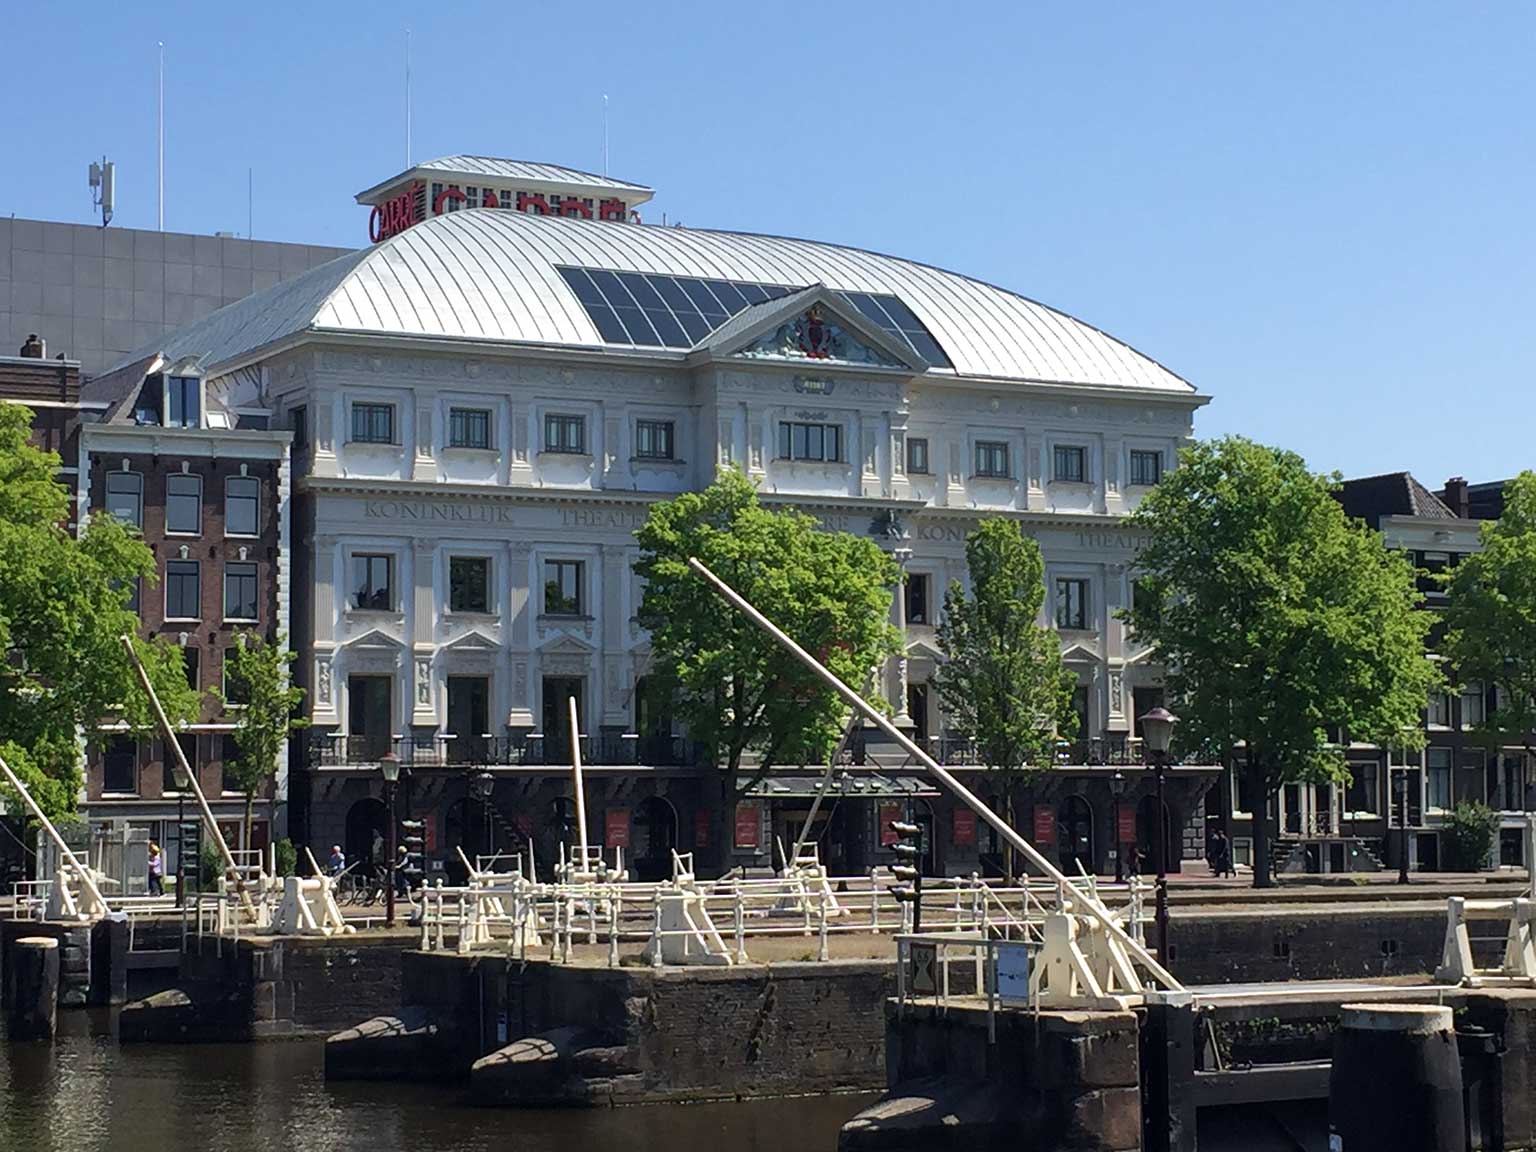 Amstelsluizen, Amsterdam, met Theater Carré op de achtergrond